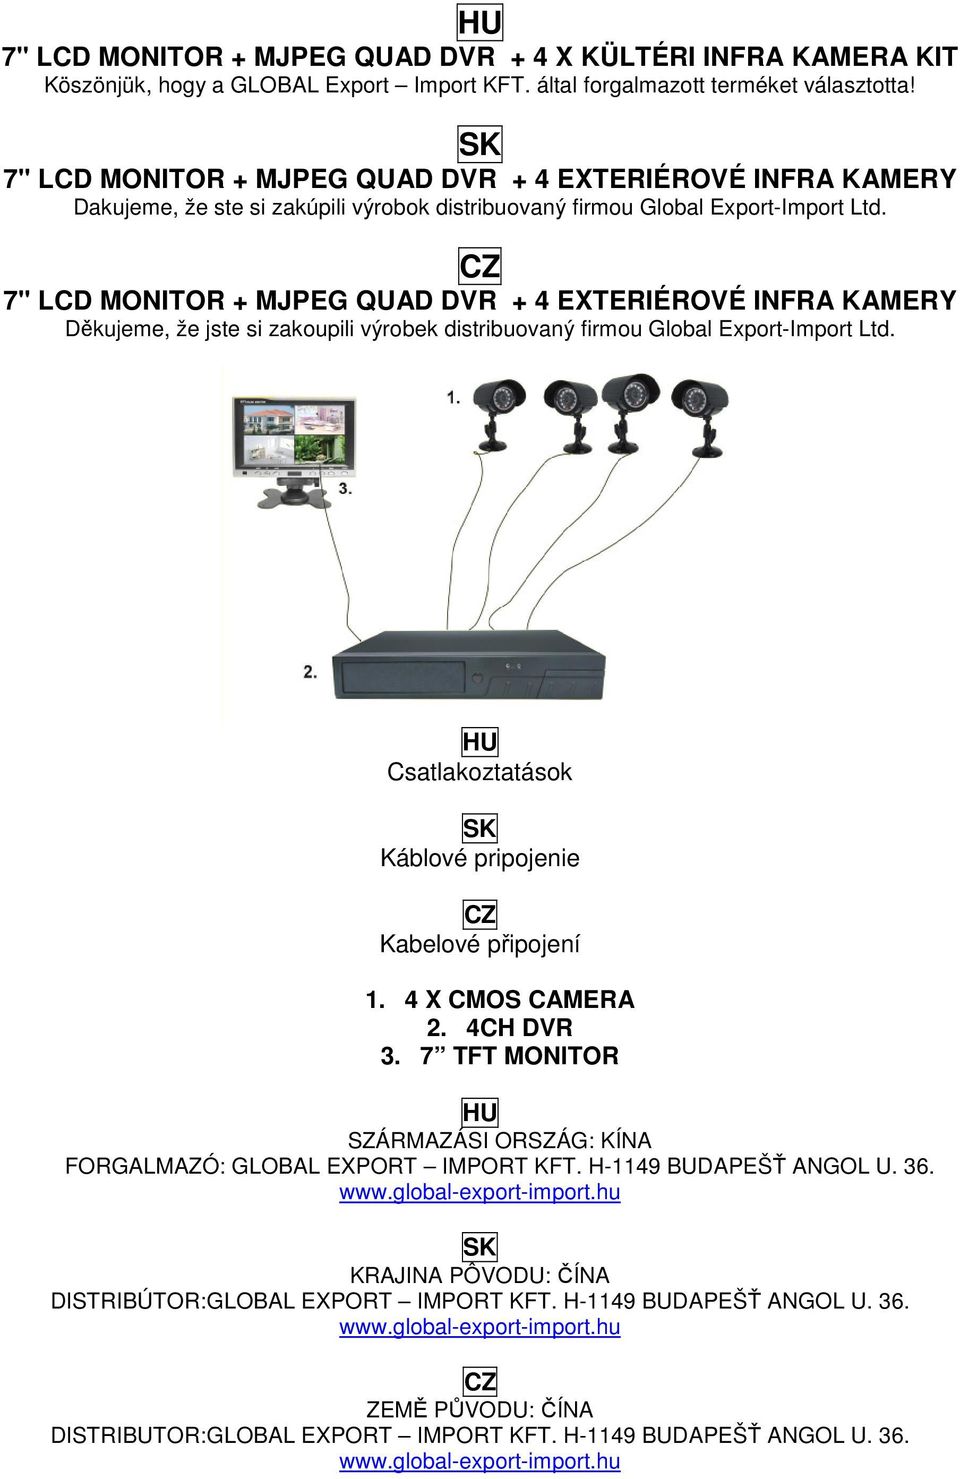 HU 7" LCD MONITOR + MJPEG QUAD DVR + 4 X KÜLTÉRI INFRA KAMERA KIT  Köszönjük, hogy a GLOBAL Export Import KFT. által forgalmazott terméket  választotta! - PDF Ingyenes letöltés